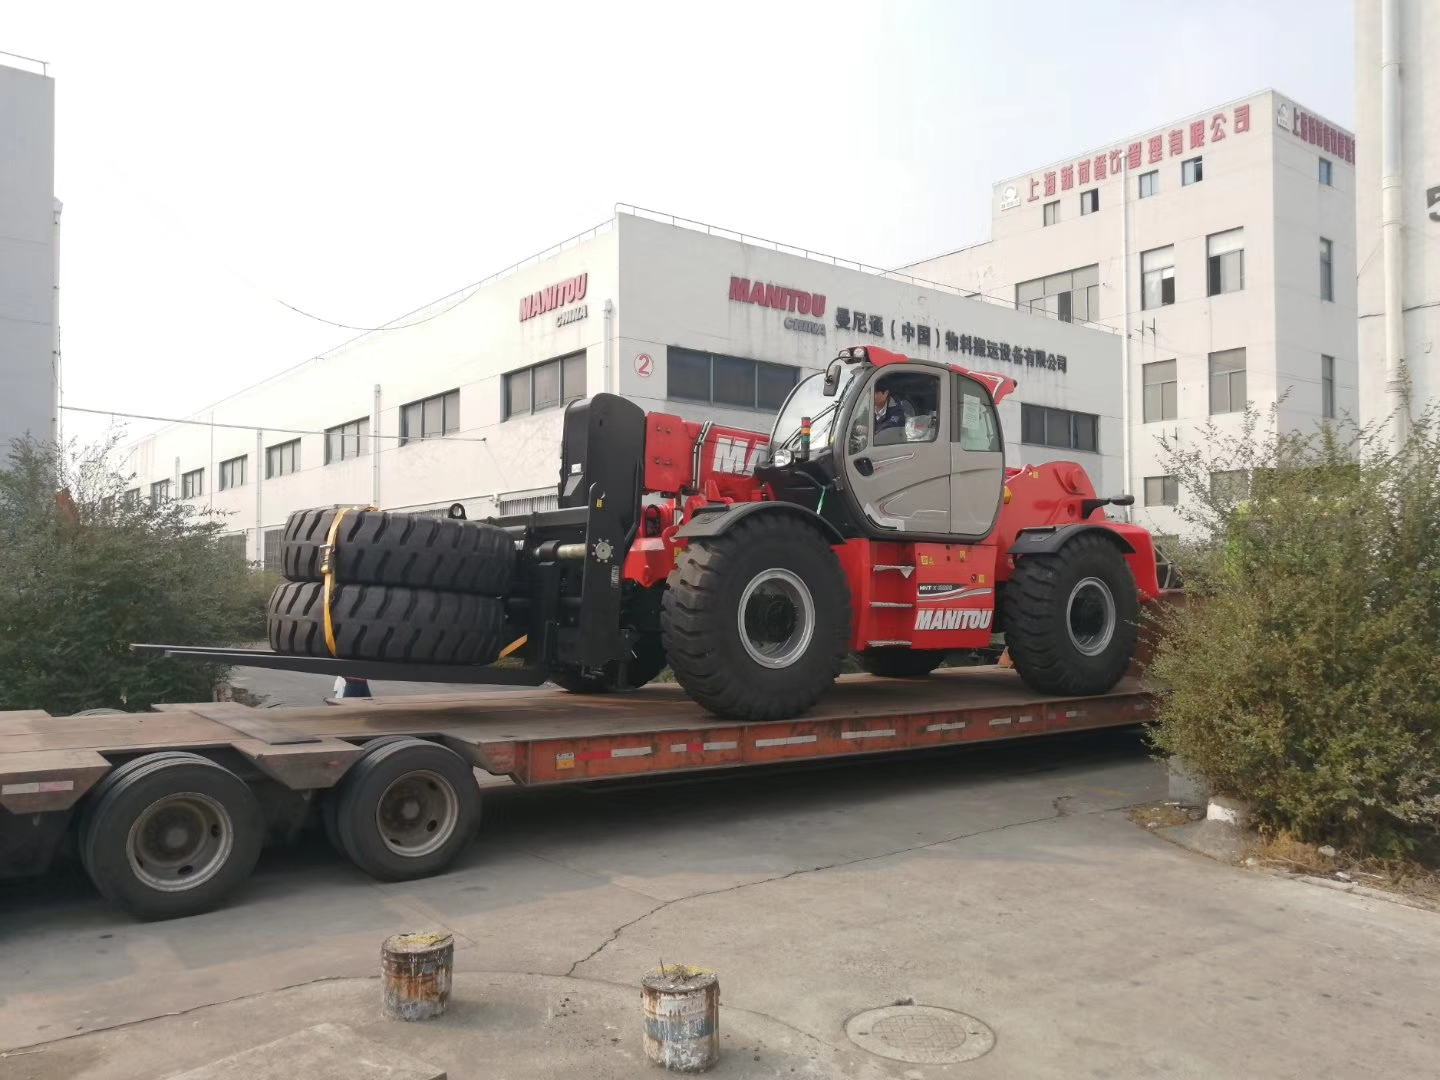 又一台伸缩臂叉装车“巨兽”到达中国